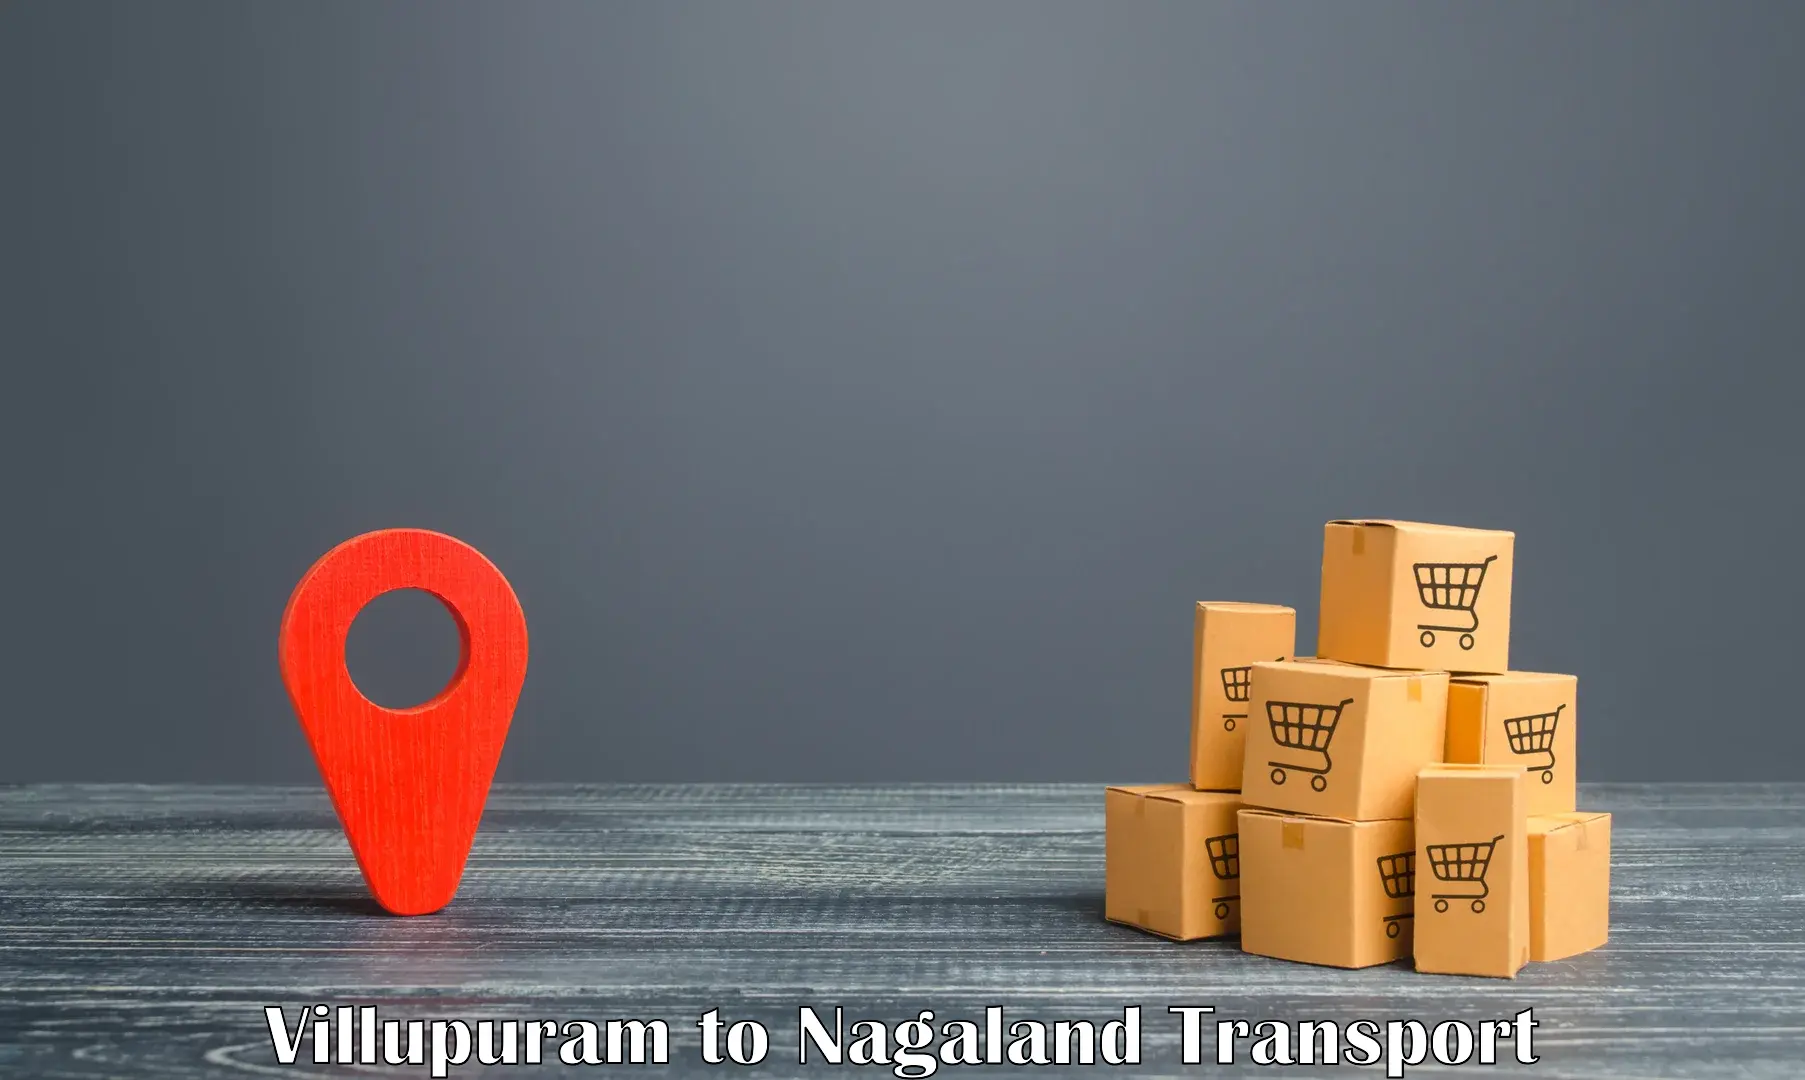 Road transport online services Villupuram to Nagaland